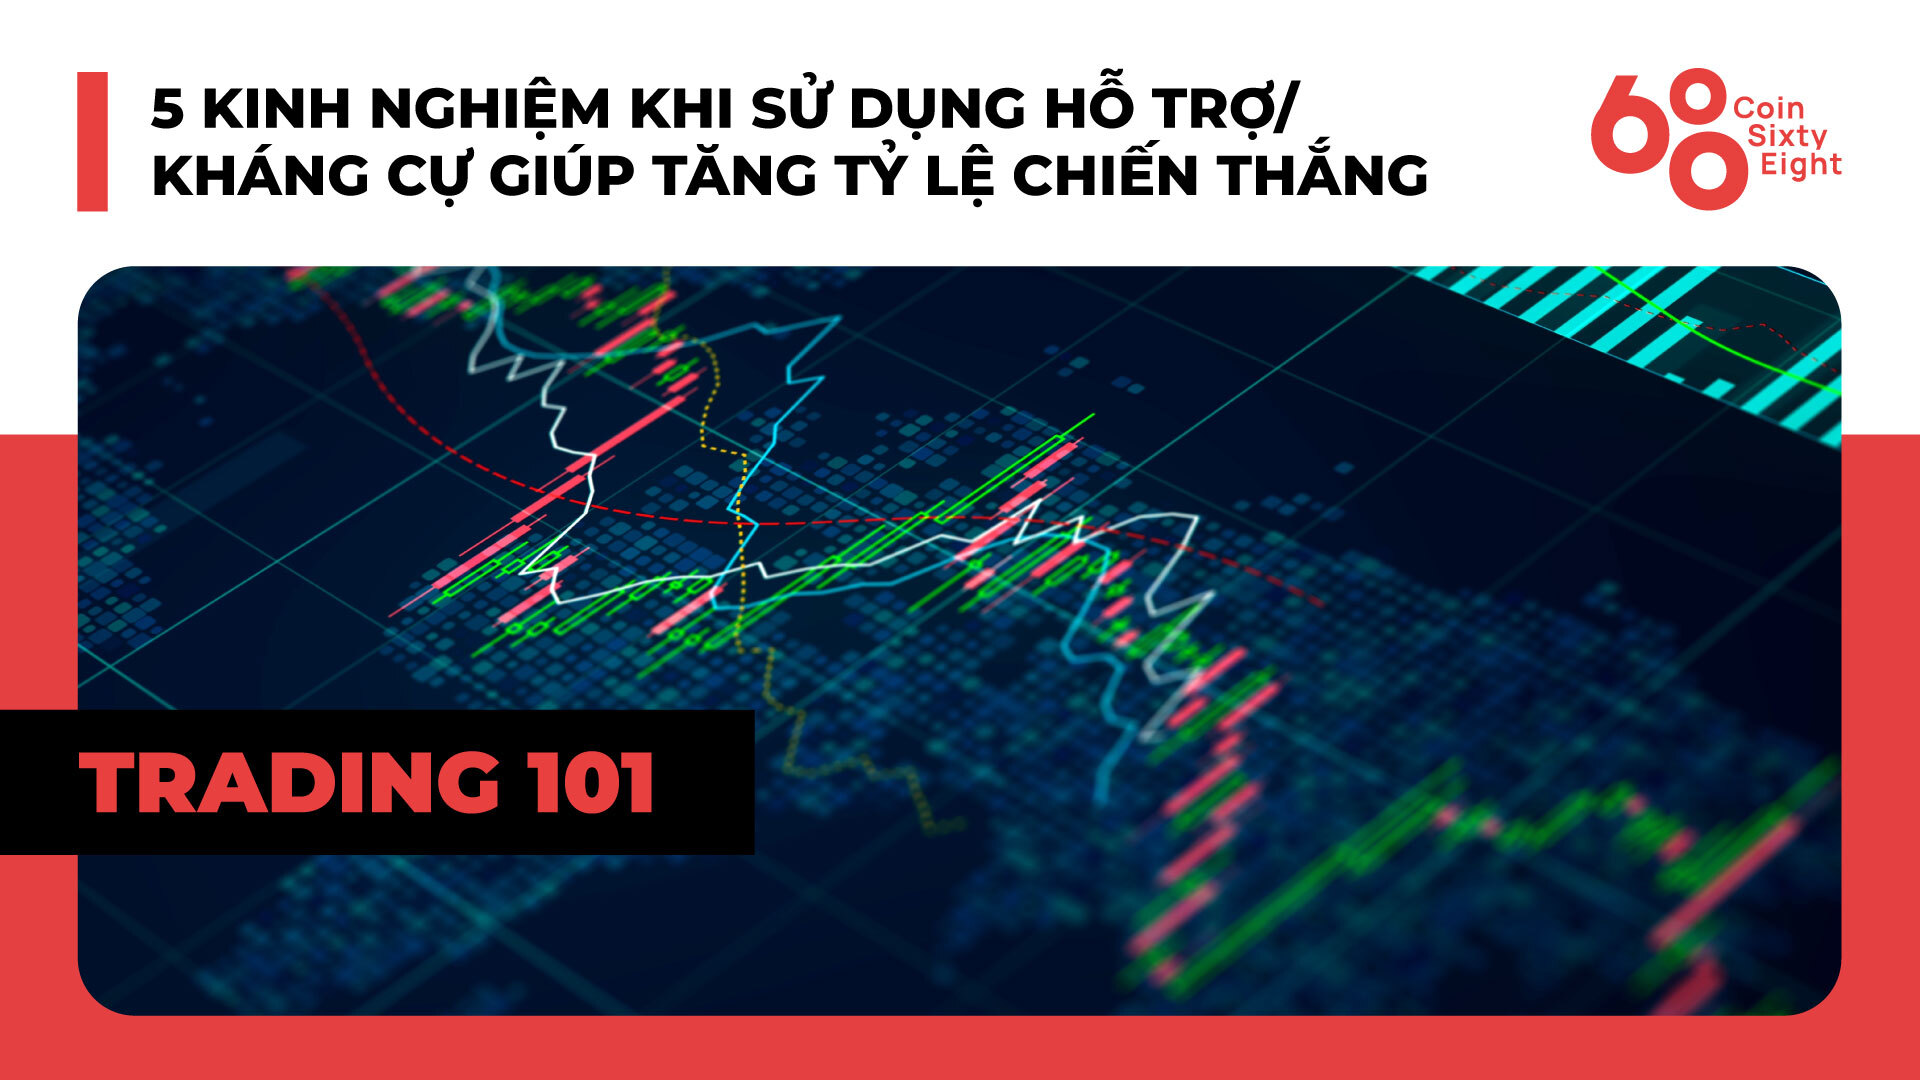 Lớp Giao Dịch 101 Price Action Trading phần 19  5 Kinh Nghiệm Khi Sử Dụng Hỗ Trợkháng Cự Giúp Tăng Tỷ Lệ Chiến Thắng